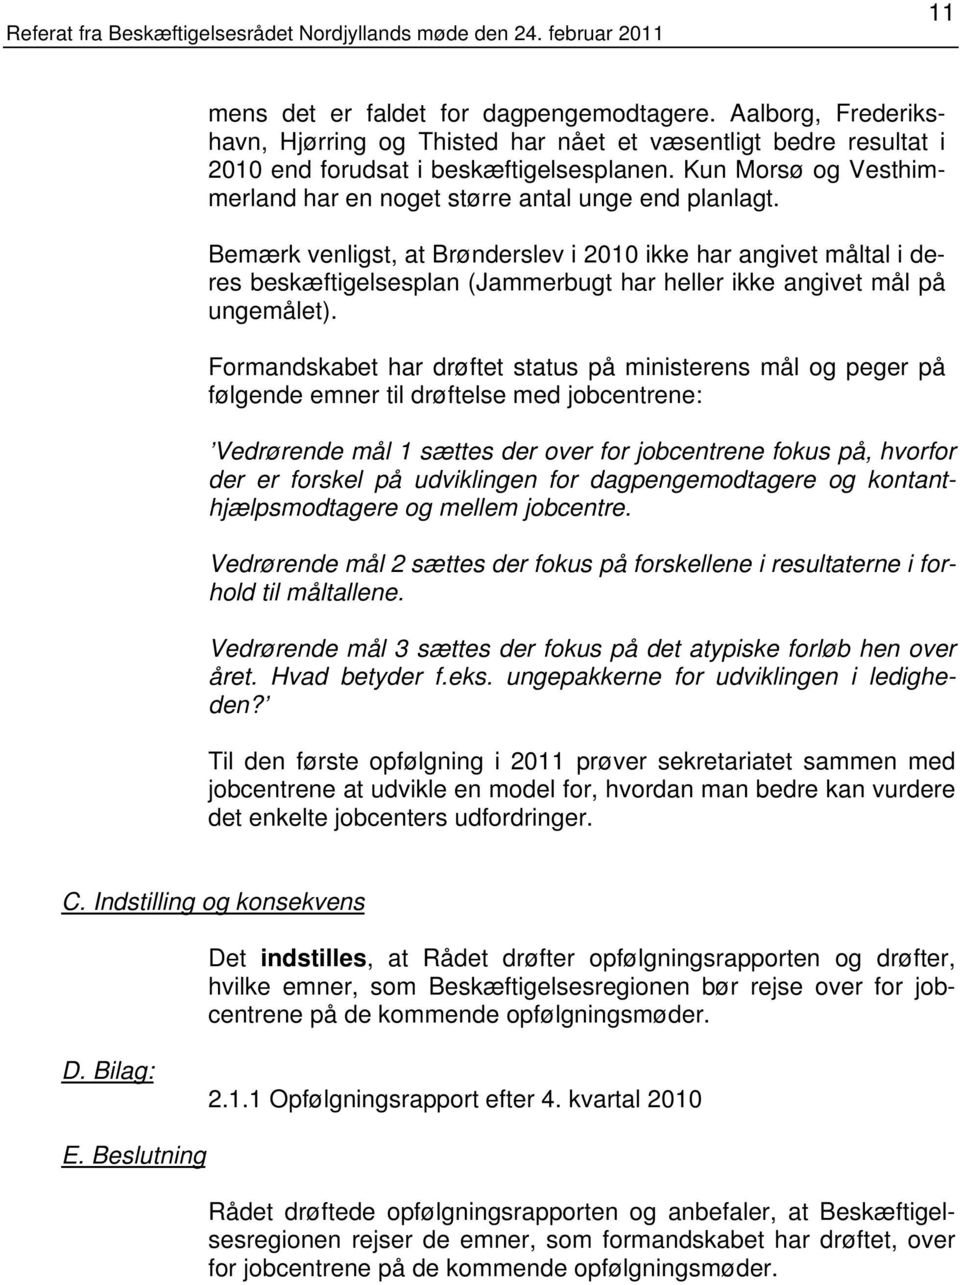 Bemærk venligst, at Brønderslev i 2010 ikke har angivet måltal i deres beskæftigelsesplan (Jammerbugt har heller ikke angivet mål på ungemålet).